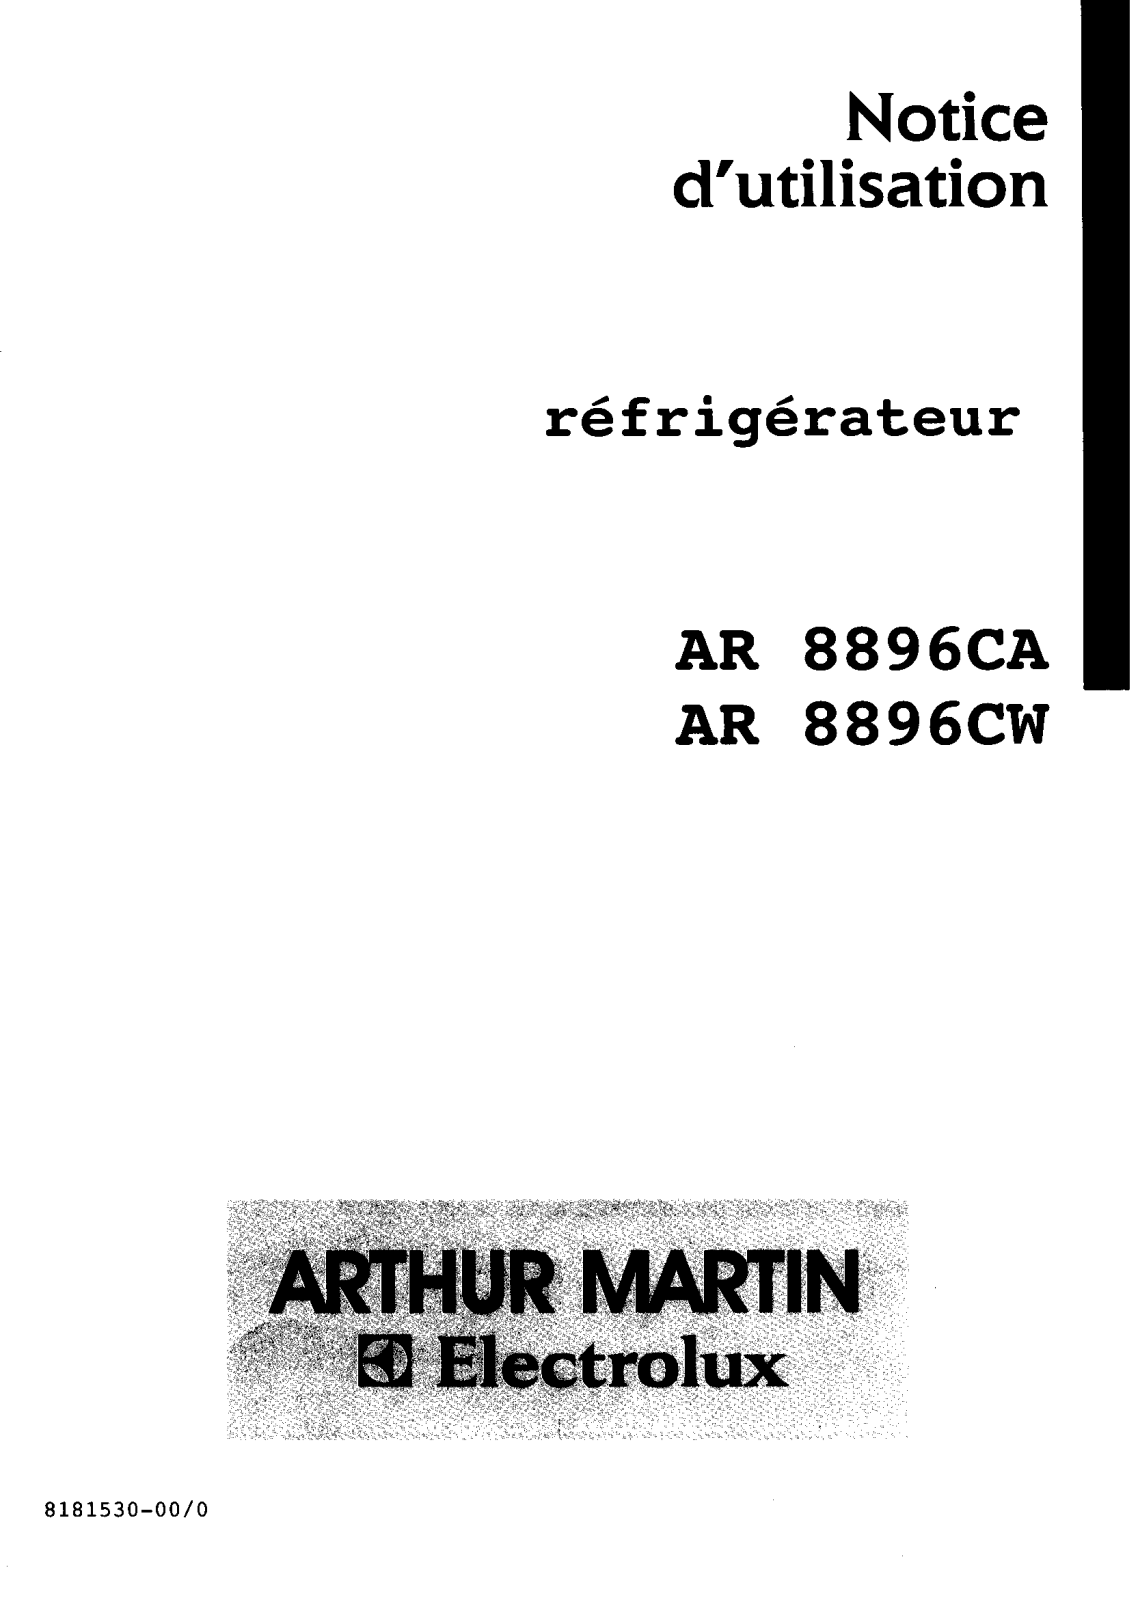 Arthur martin AR8896CW, AR8896CA User Manual